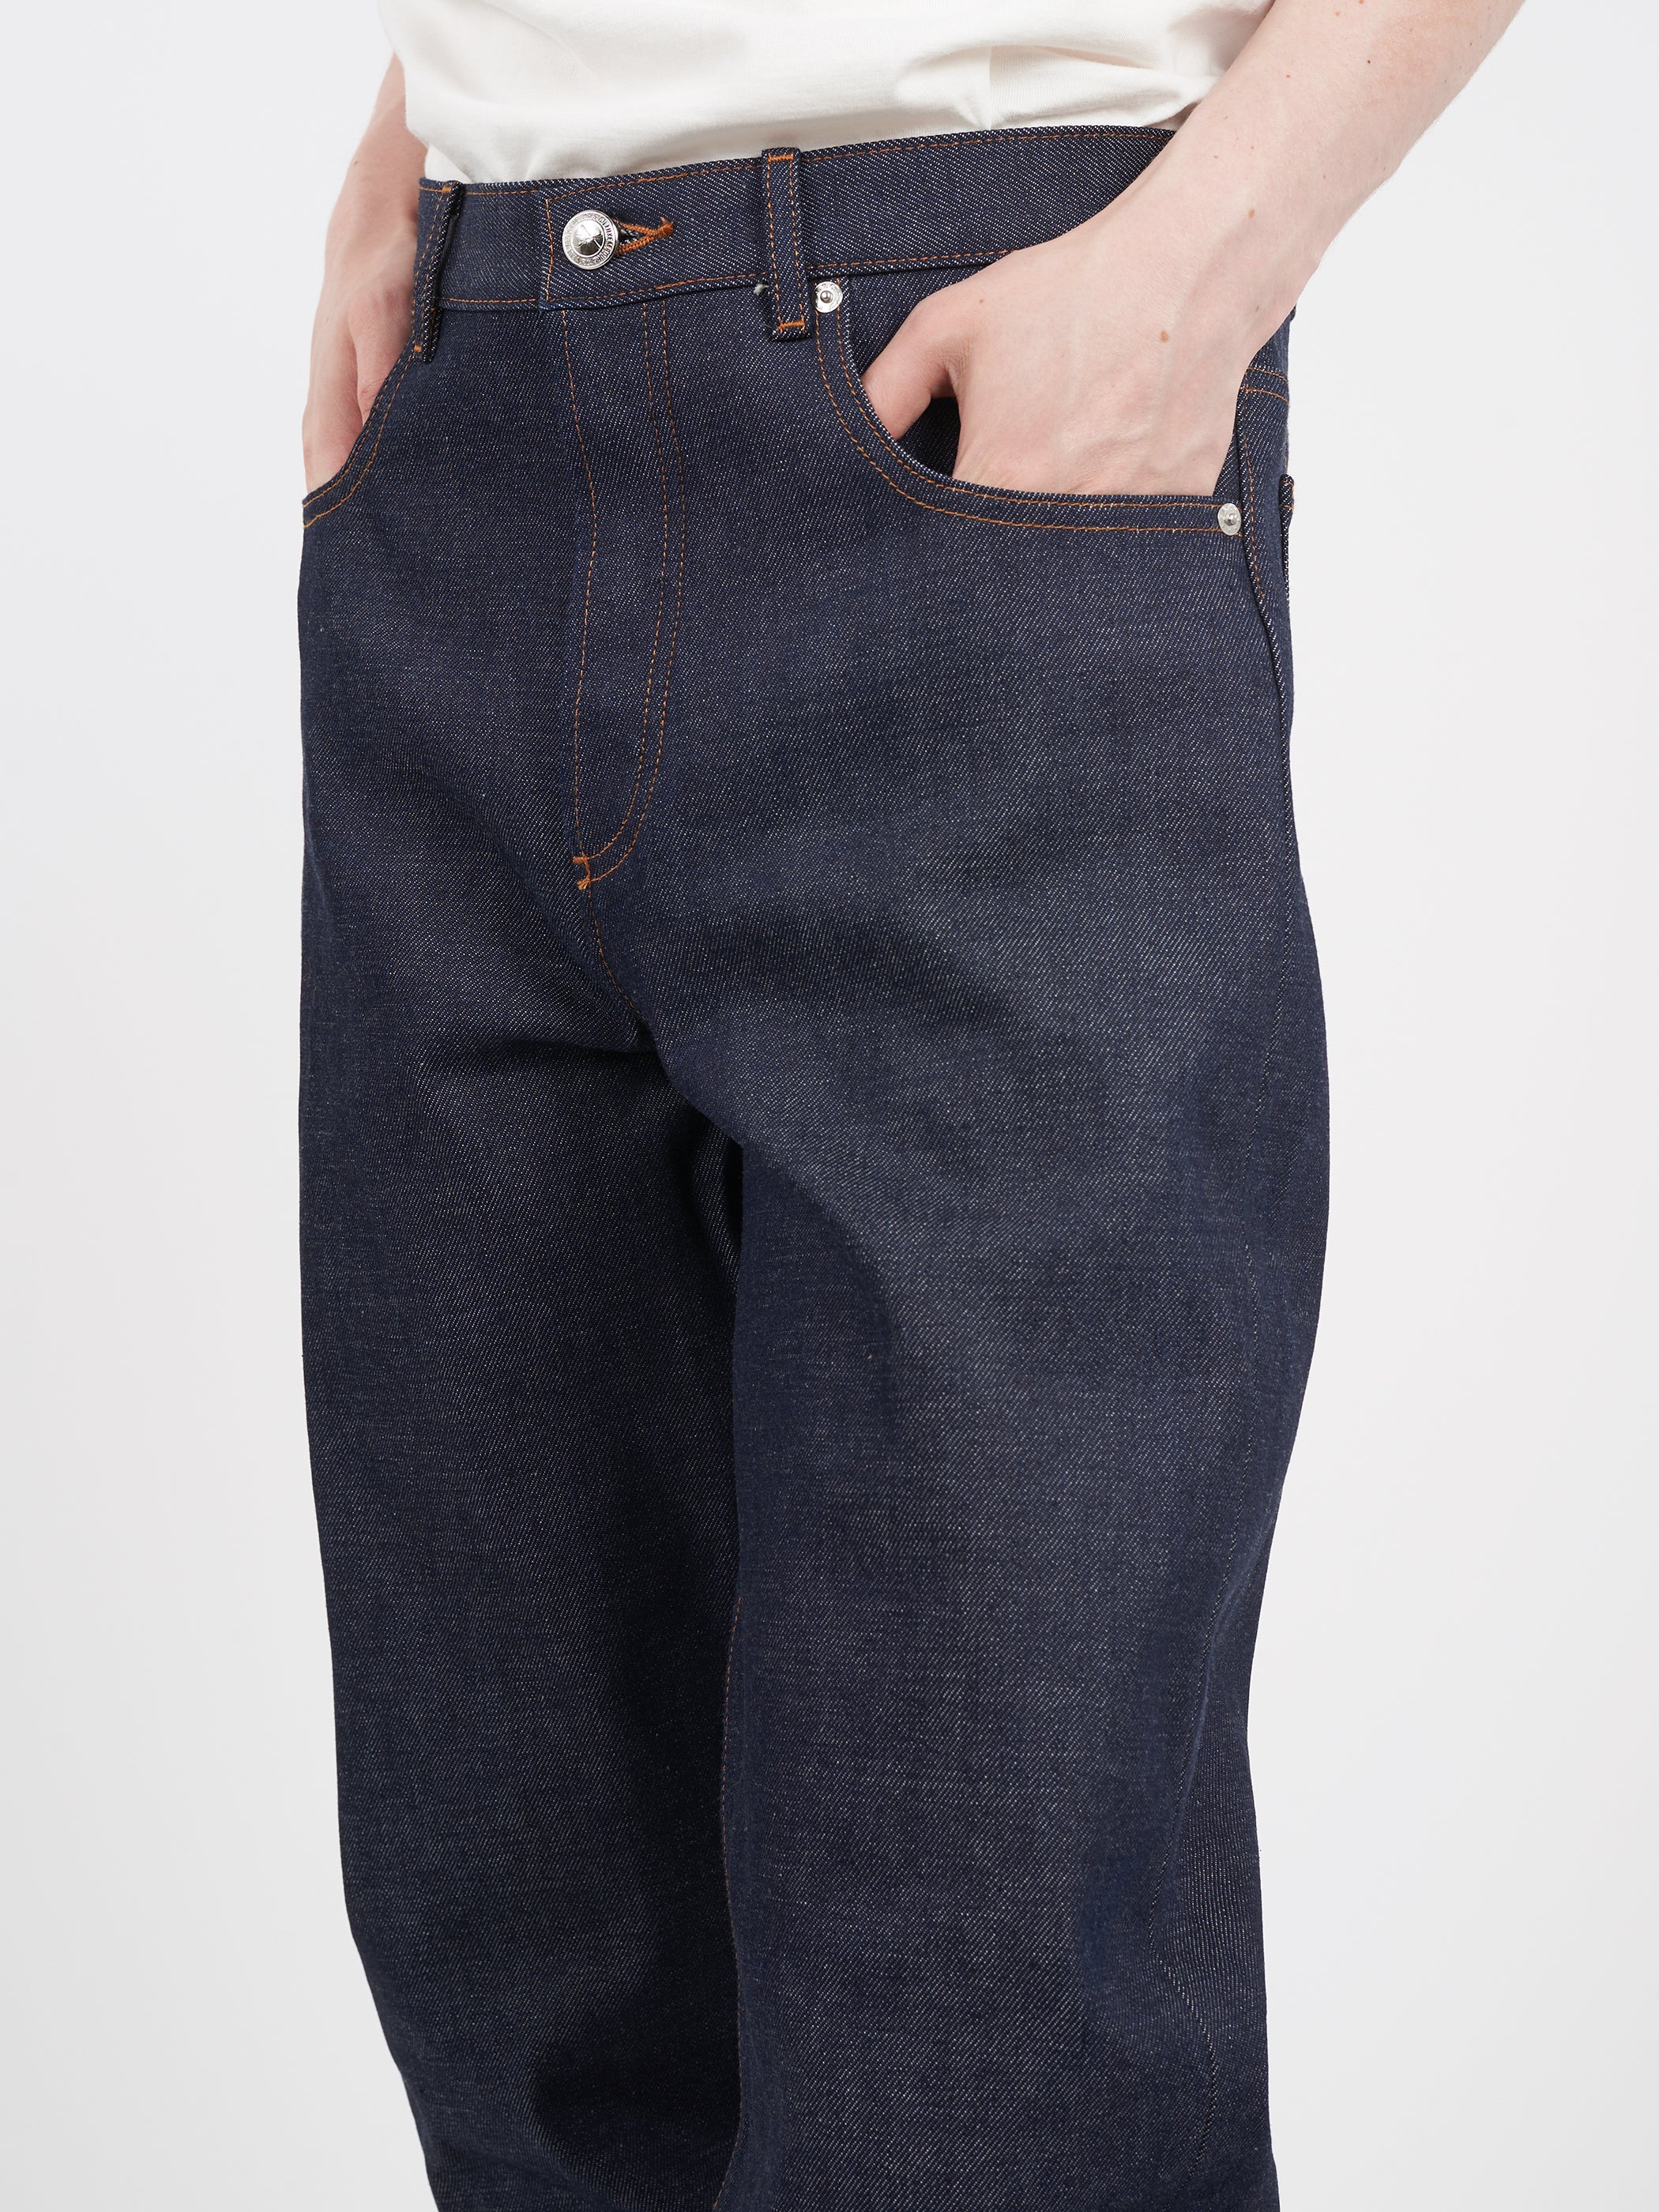 Fairfax Jeans